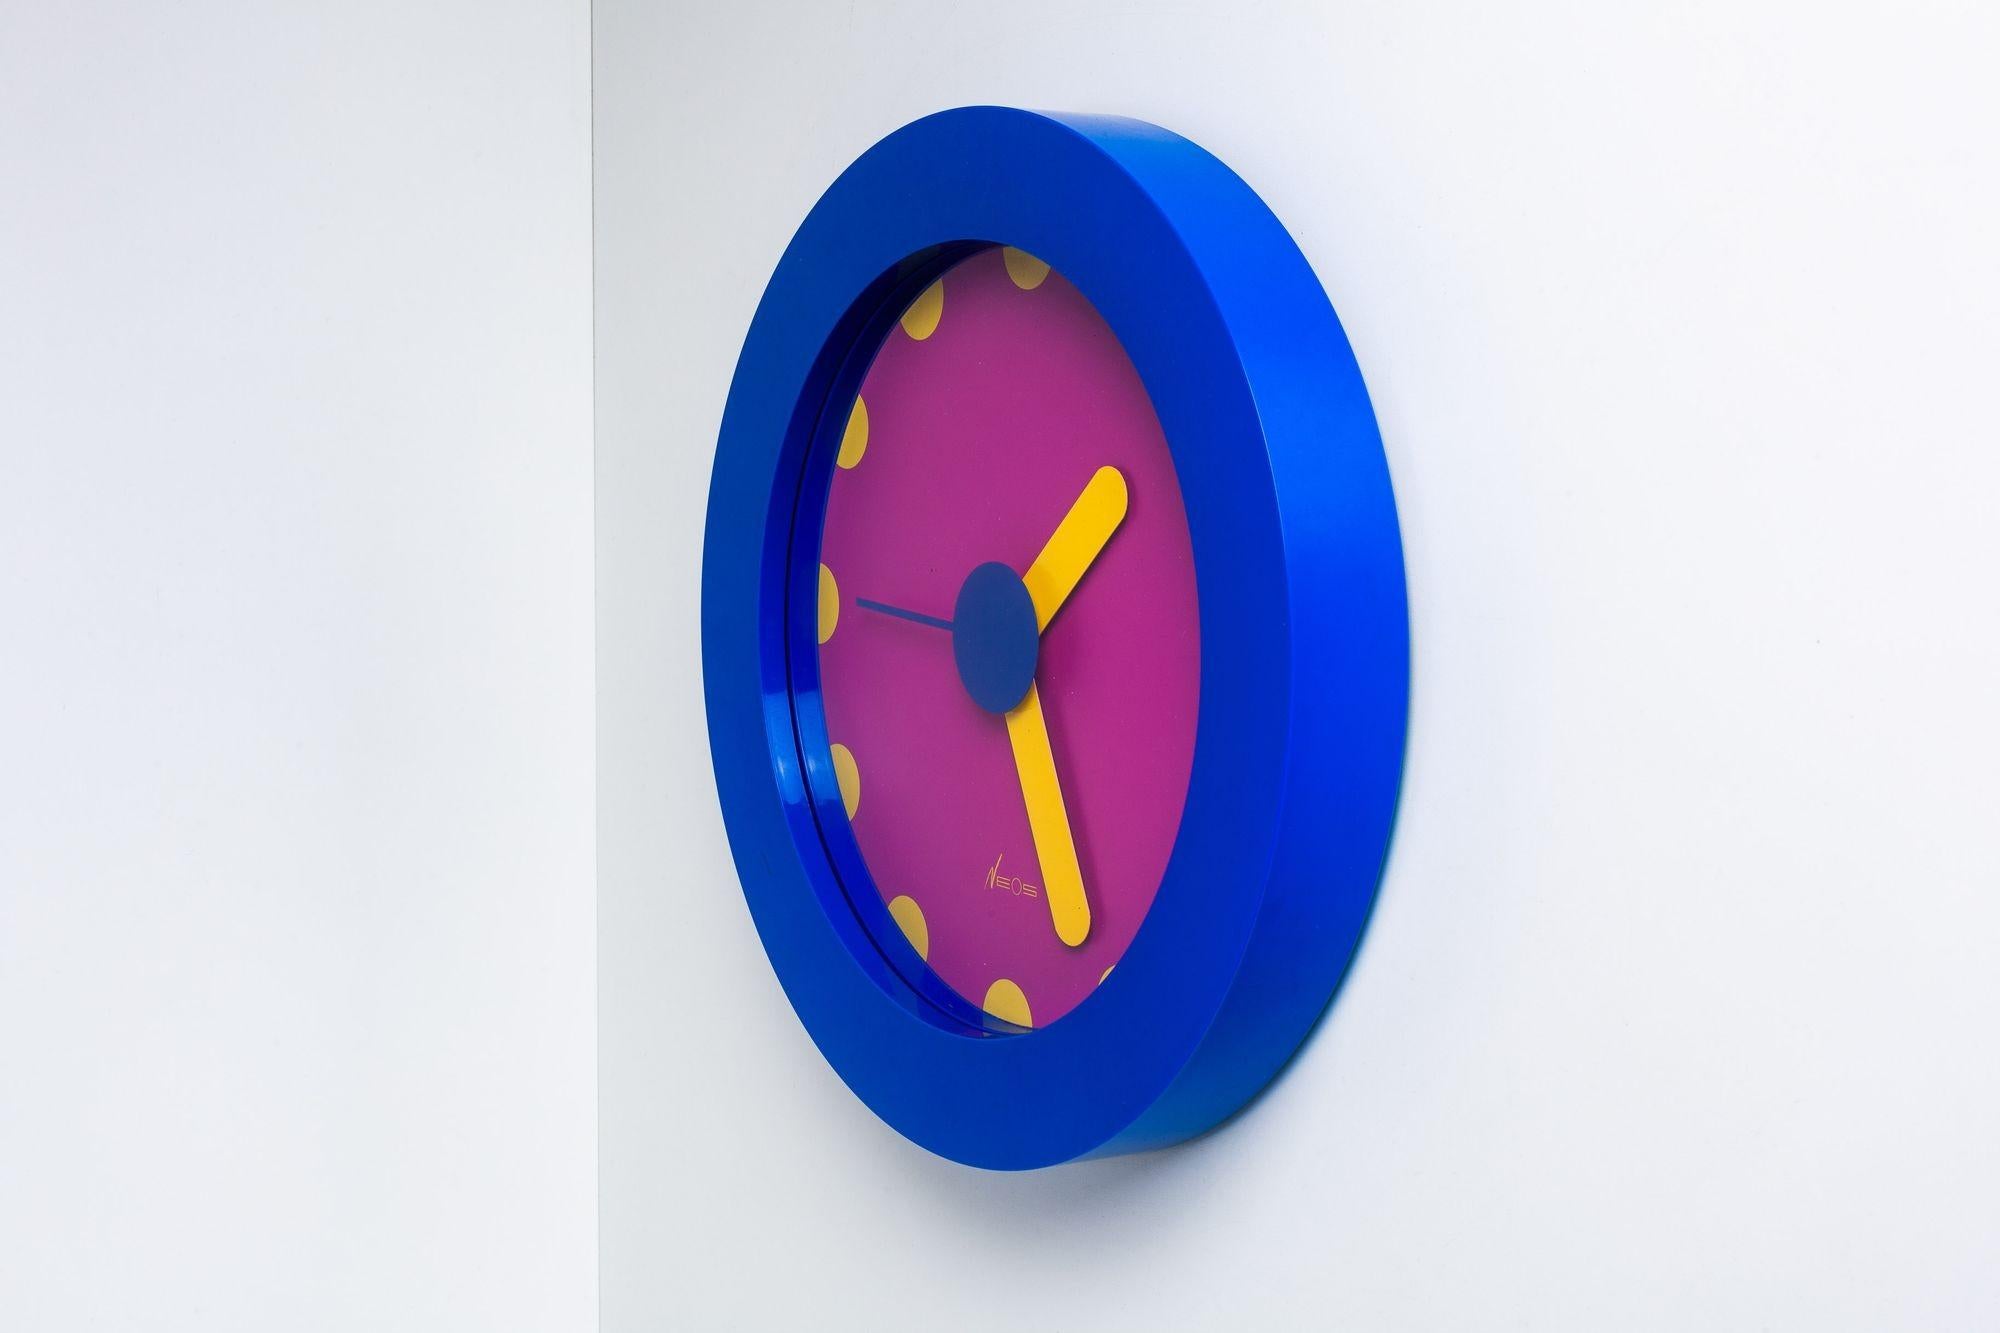 Horloge postmoderne Neos Lorenz du Pasquier & Sowden
Une horloge murale postmoderne en plastique bleu et violet avec des aiguilles et des chiffres jaunes, conçue par Nathalie du Pasquier et George Sowden pour Neos of Lorenz à la fin des années